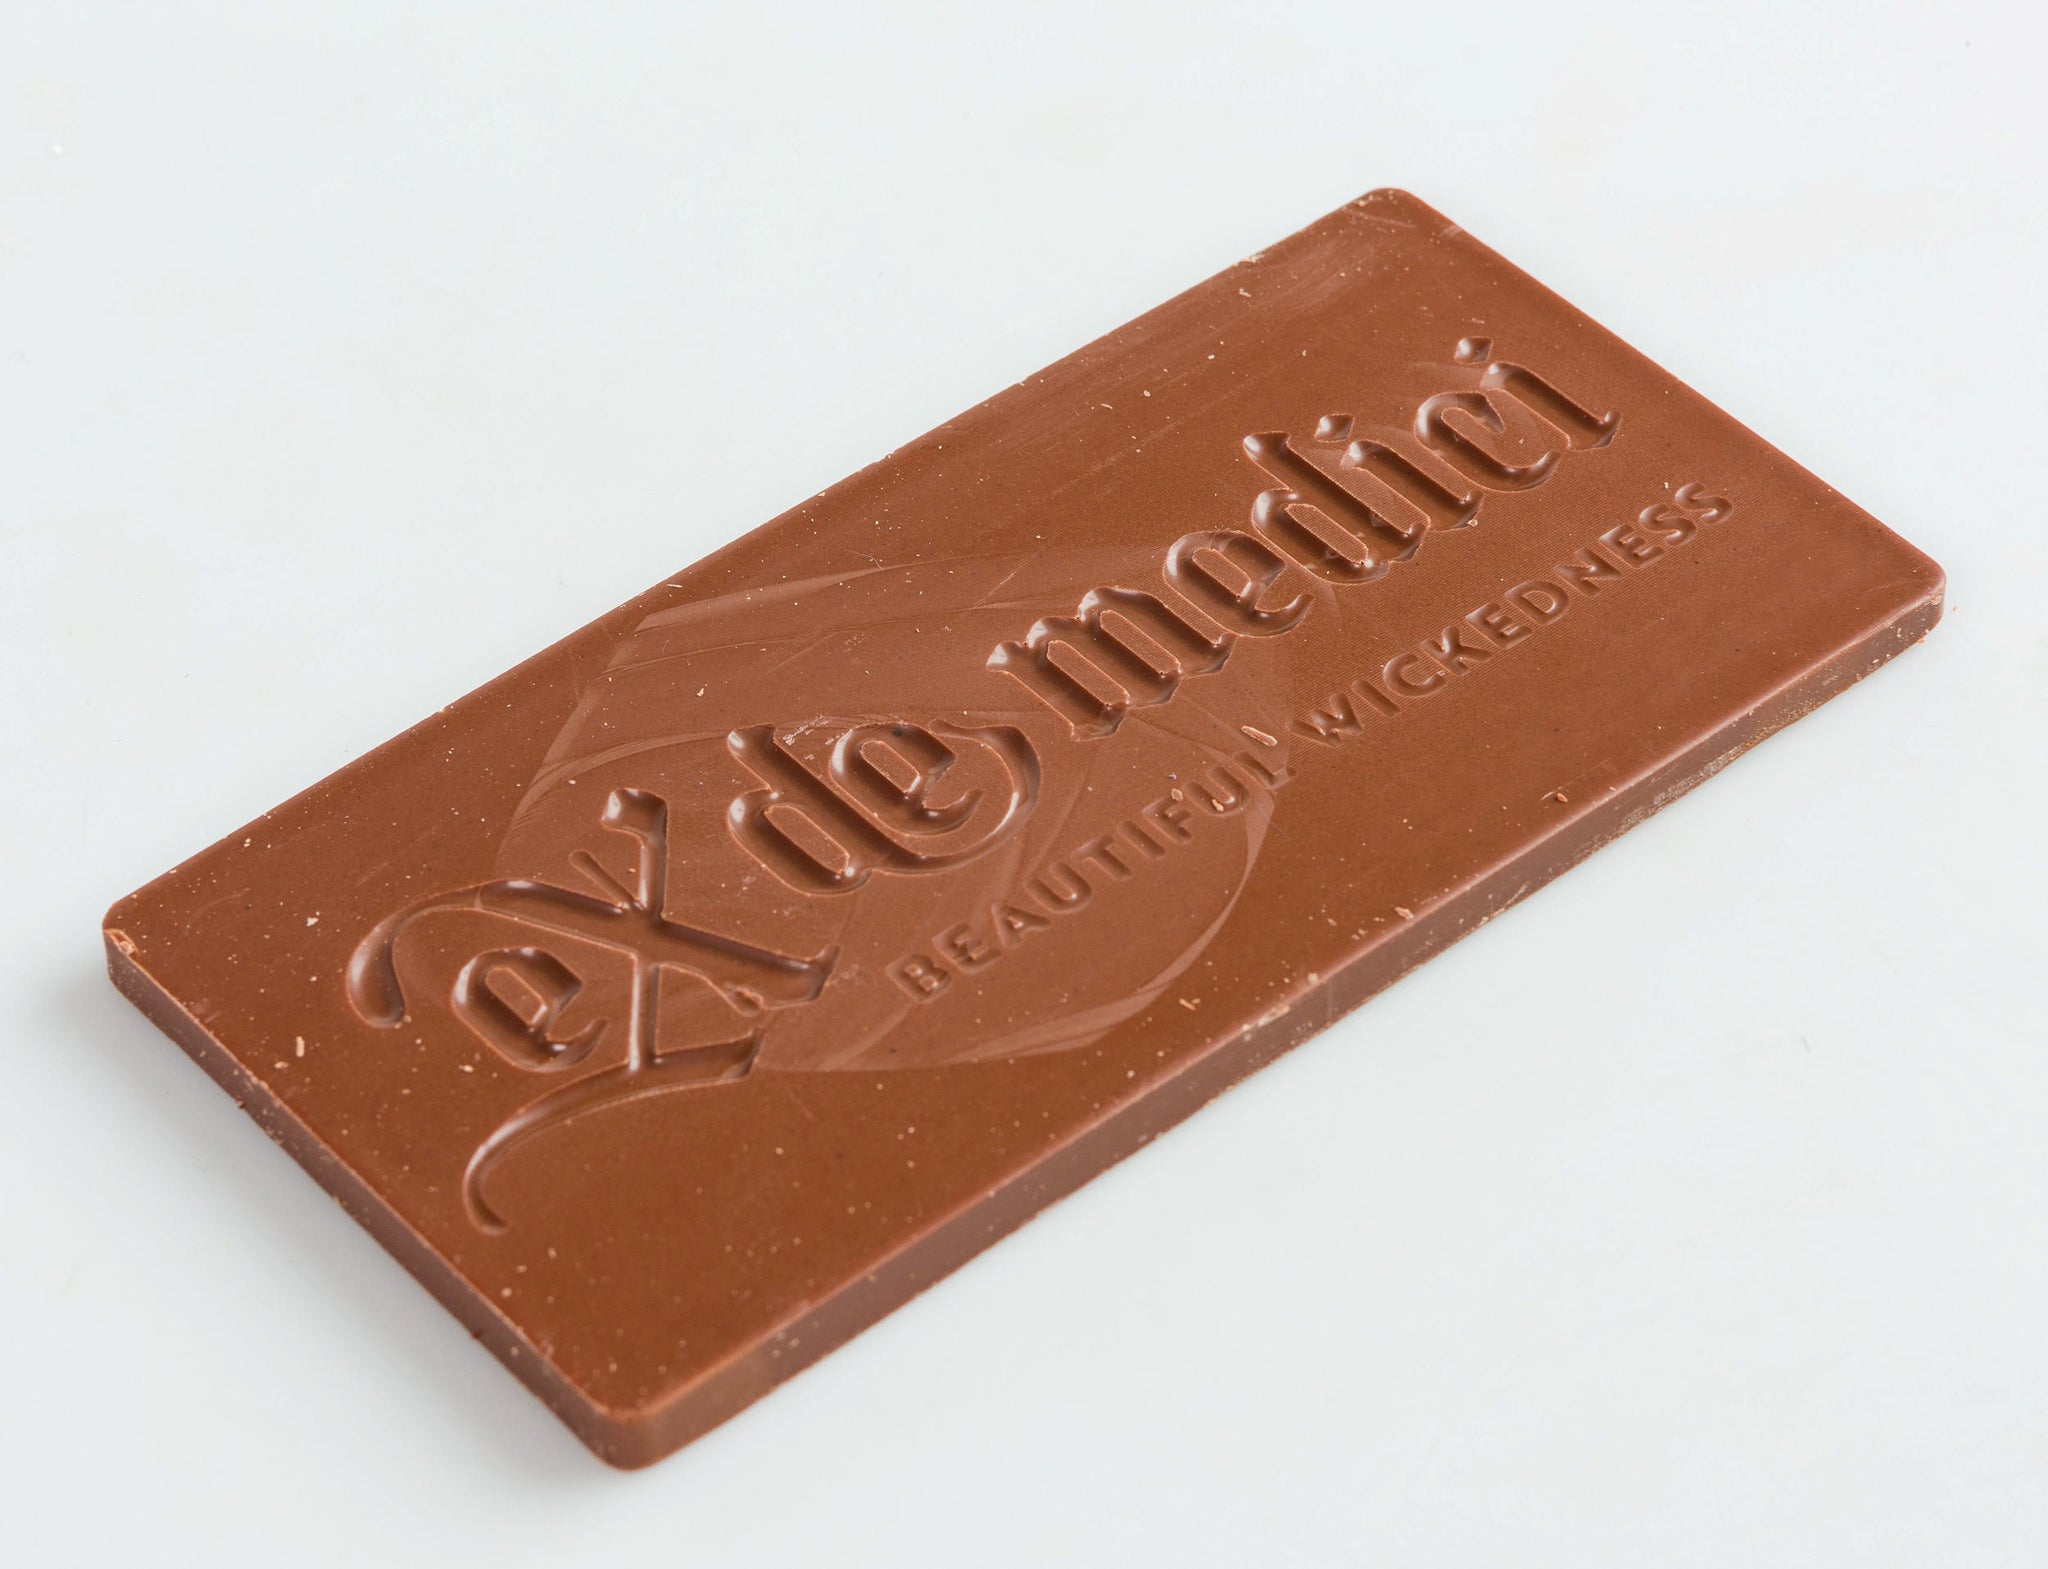 eX de Medici Chocolate Card